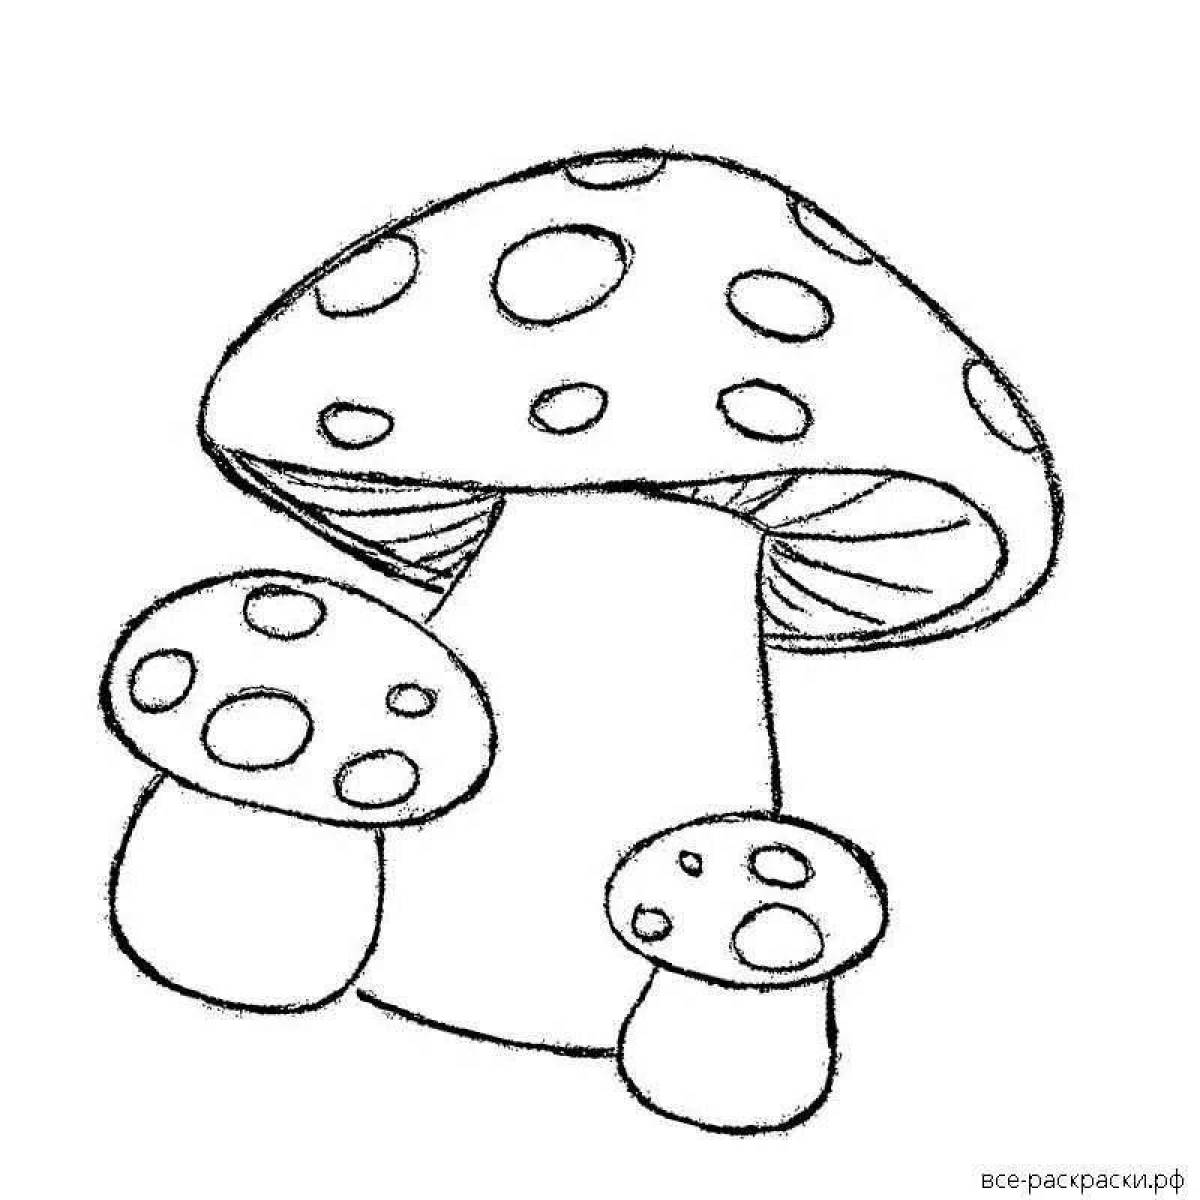 Замысловатая раскраска грибов-мухоморов